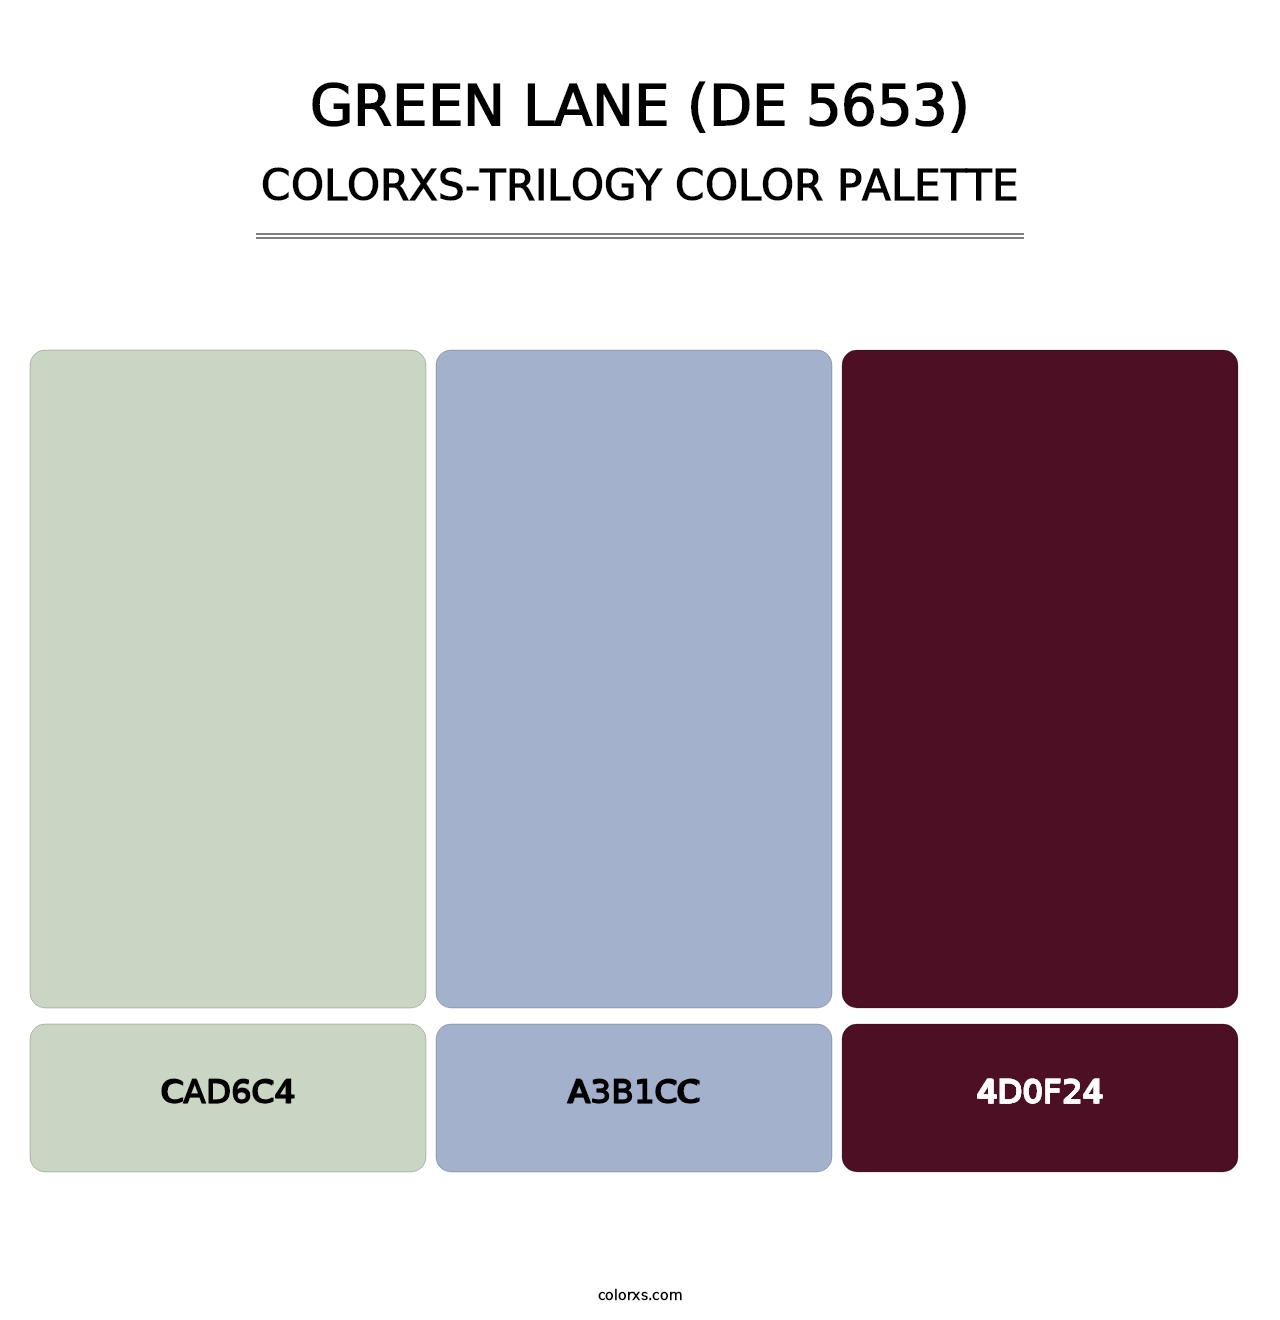 Green Lane (DE 5653) - Colorxs Trilogy Palette